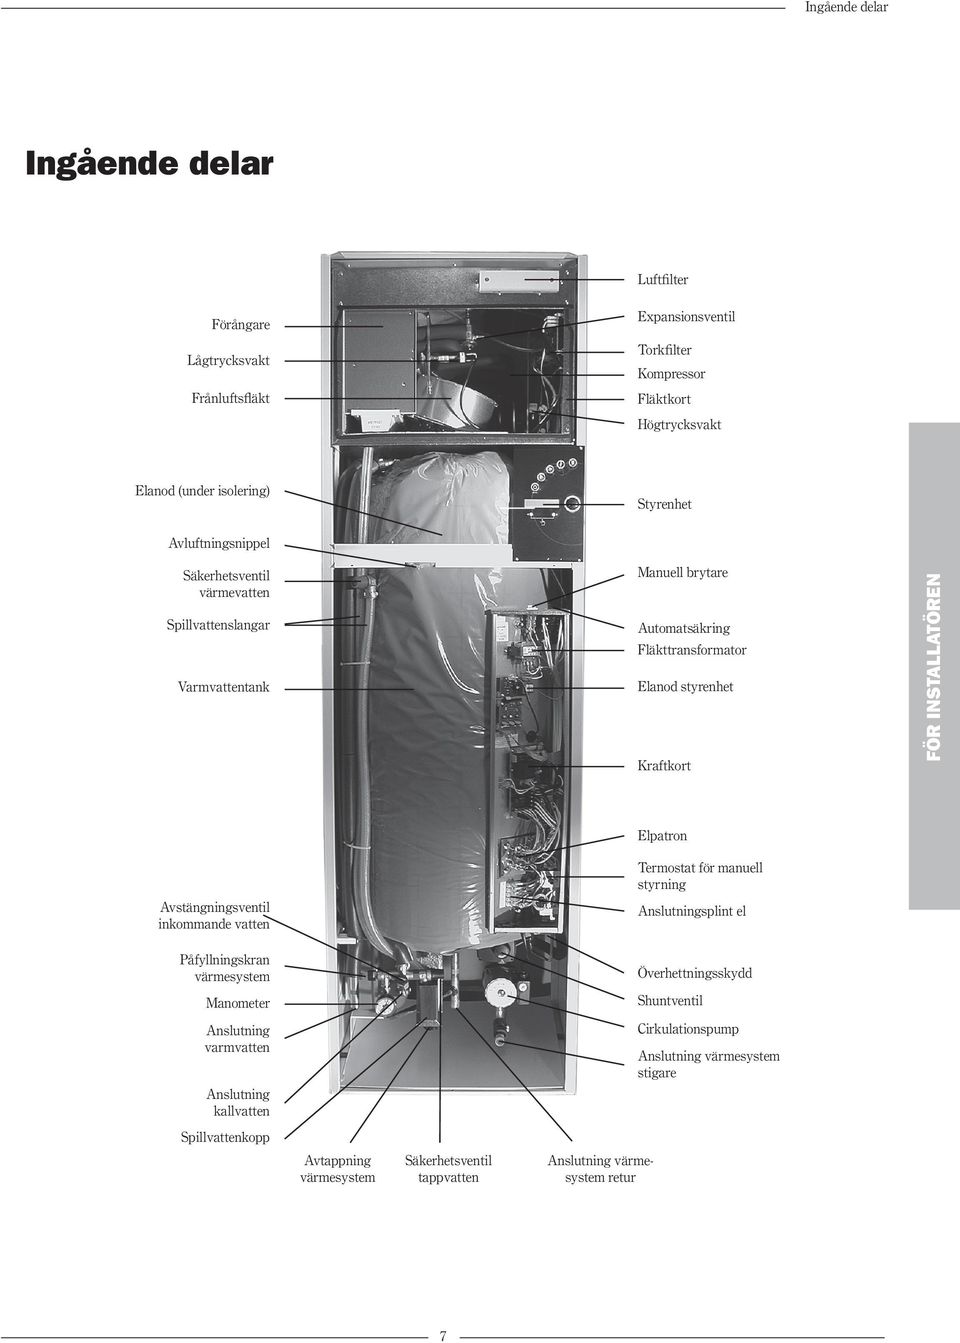 Avstängningsventil inkommande vatten Elpatron Termostat för manuell styrning Anslutningsplint el Påfyllningskran värmesystem Manometer Anslutning varmvatten Anslutning